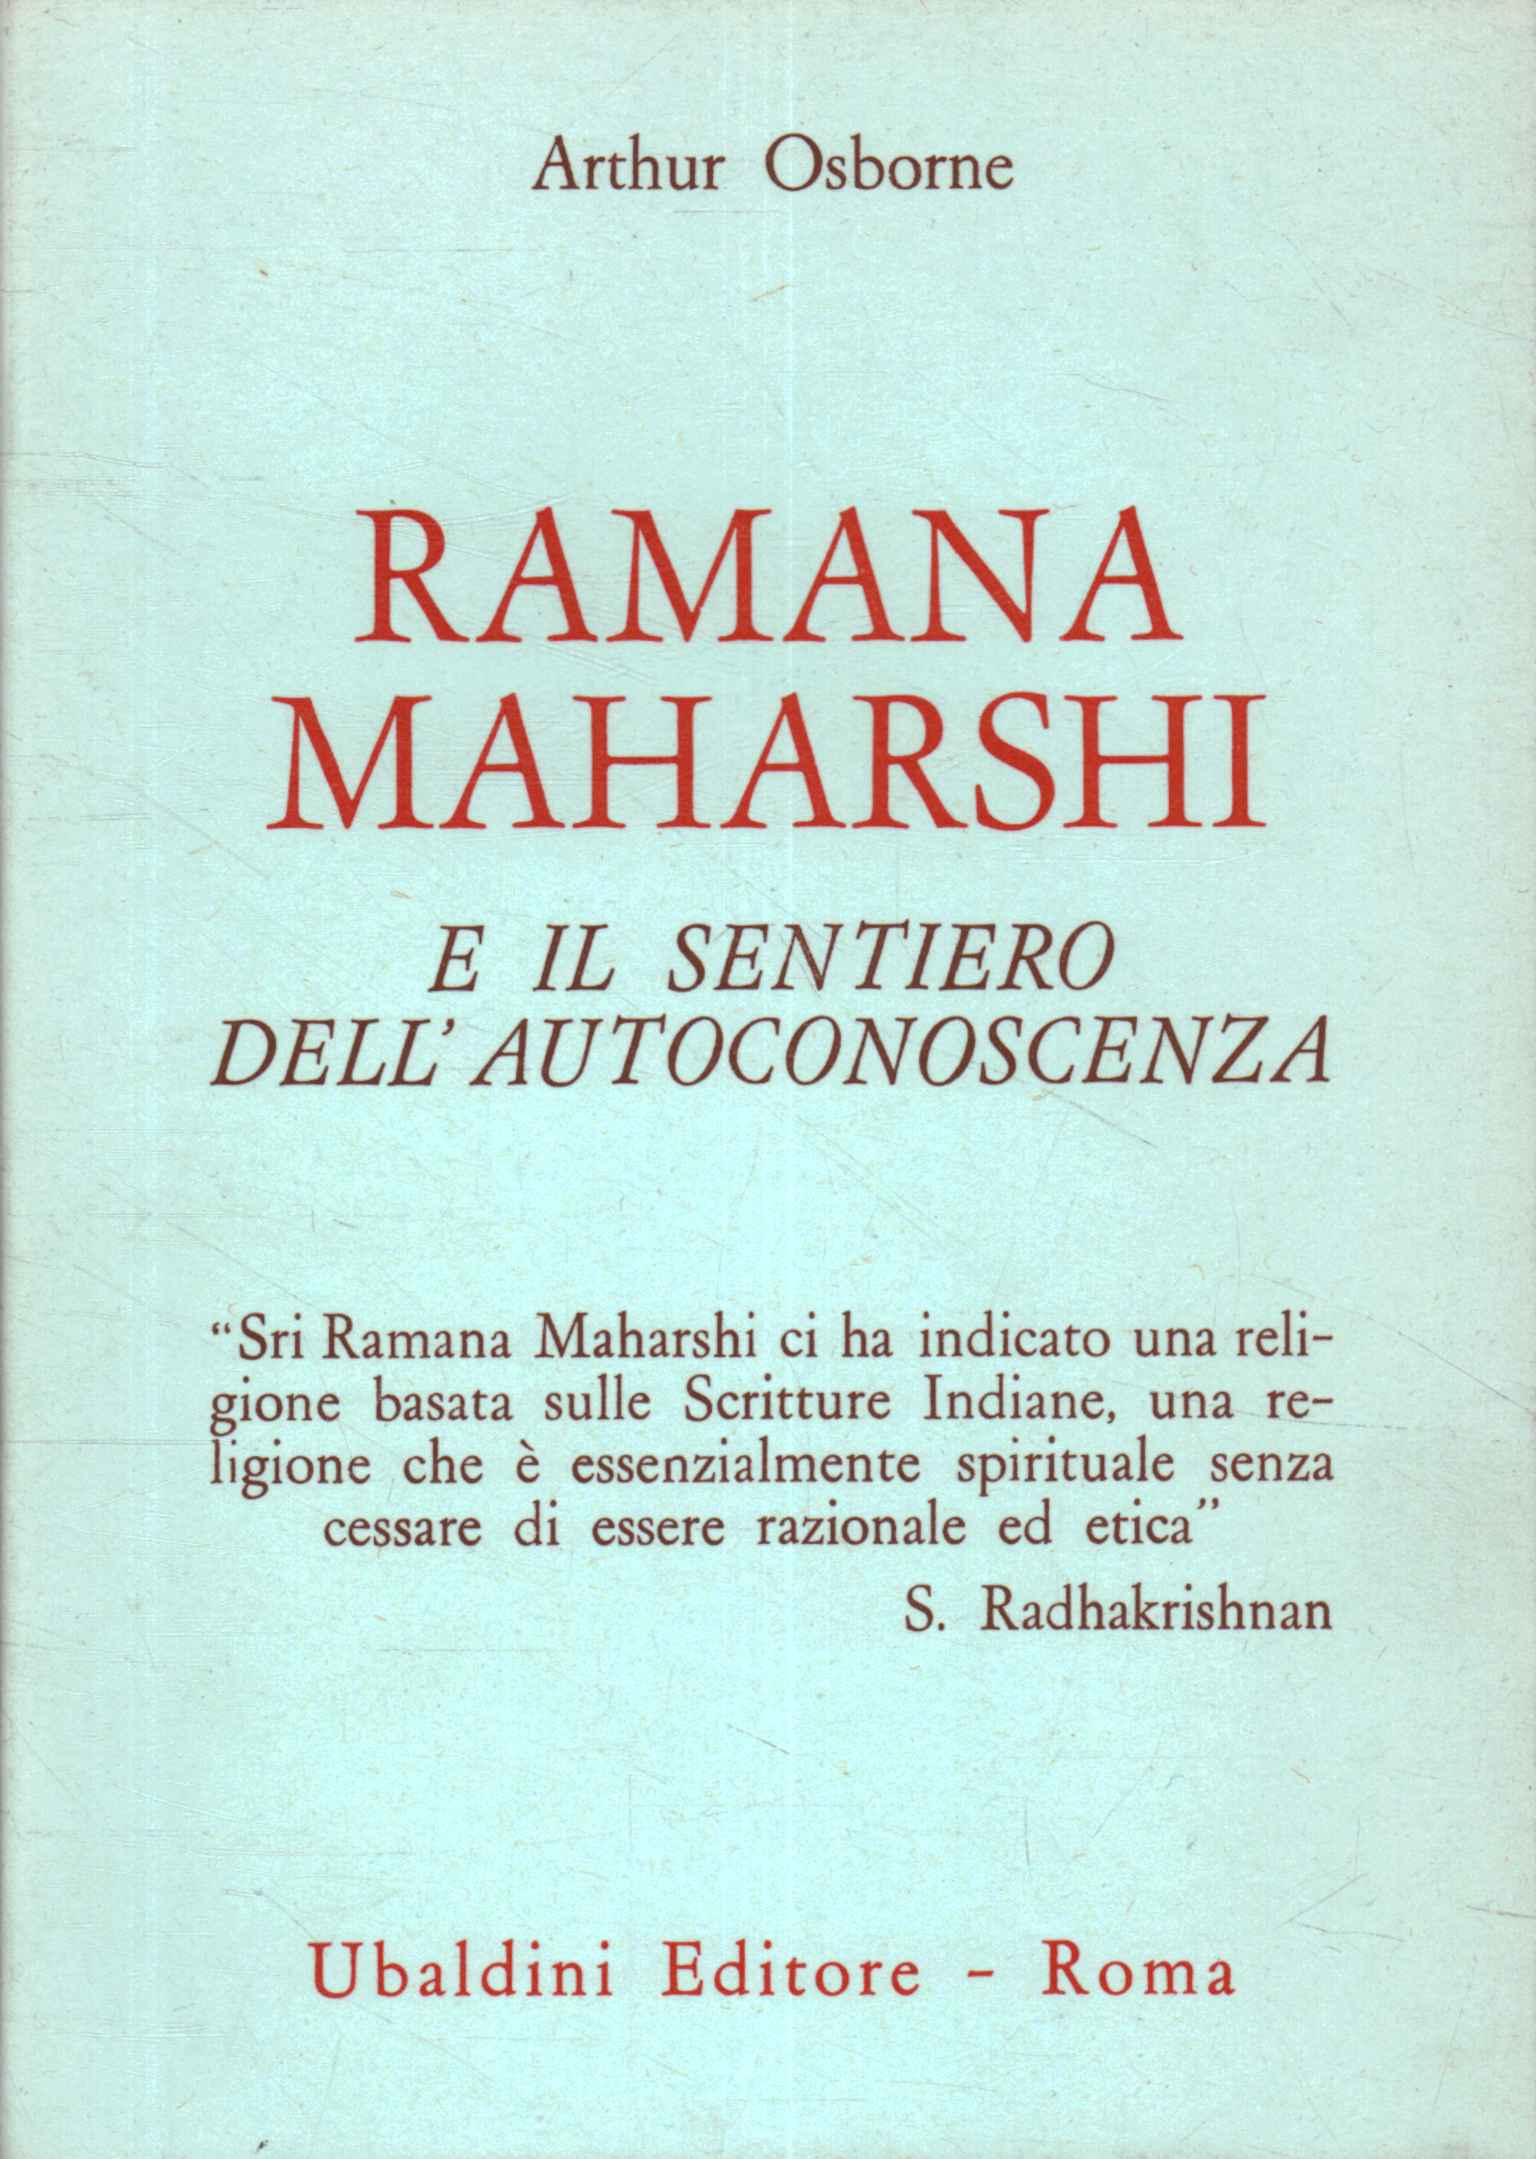 Ramana Maharshi y el camino del apóstol